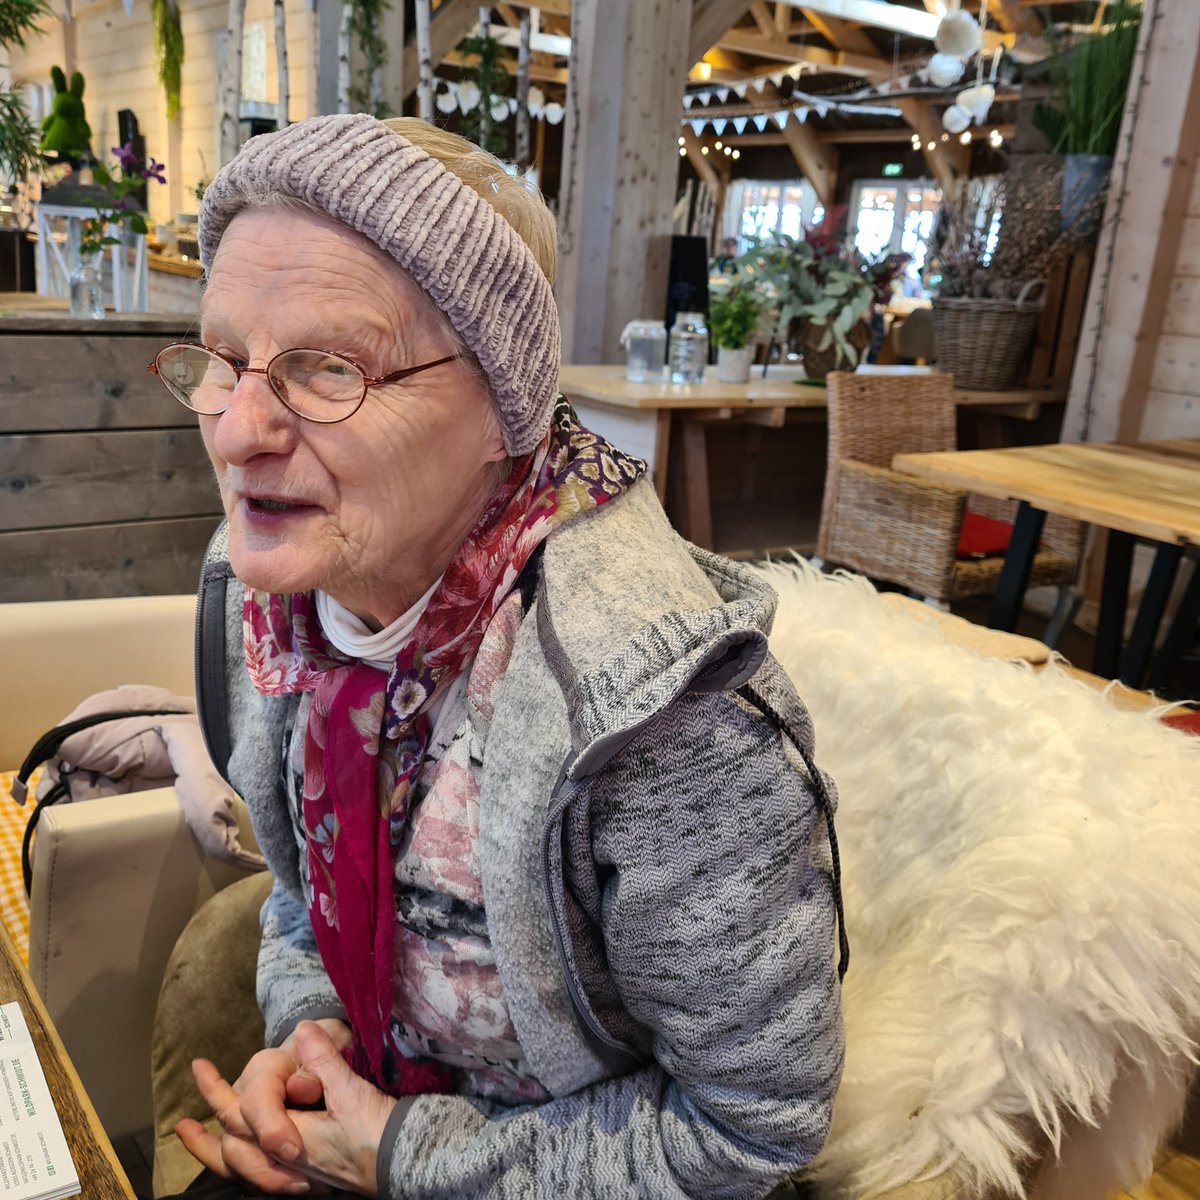 Heute zum Geburtstags- Frühstück mit der 87jährigen Tante auf dem #Krewelshof. Seit 70 Jahren hier, vermisst sie ihre Heimat Dessau immer noch. Ihr Geburtsname ist Naskret. Nach ihren Angaben scheint die Familie dort ausgestorben zu sein. Schade, es ist ein außergewöhnlicher Name…